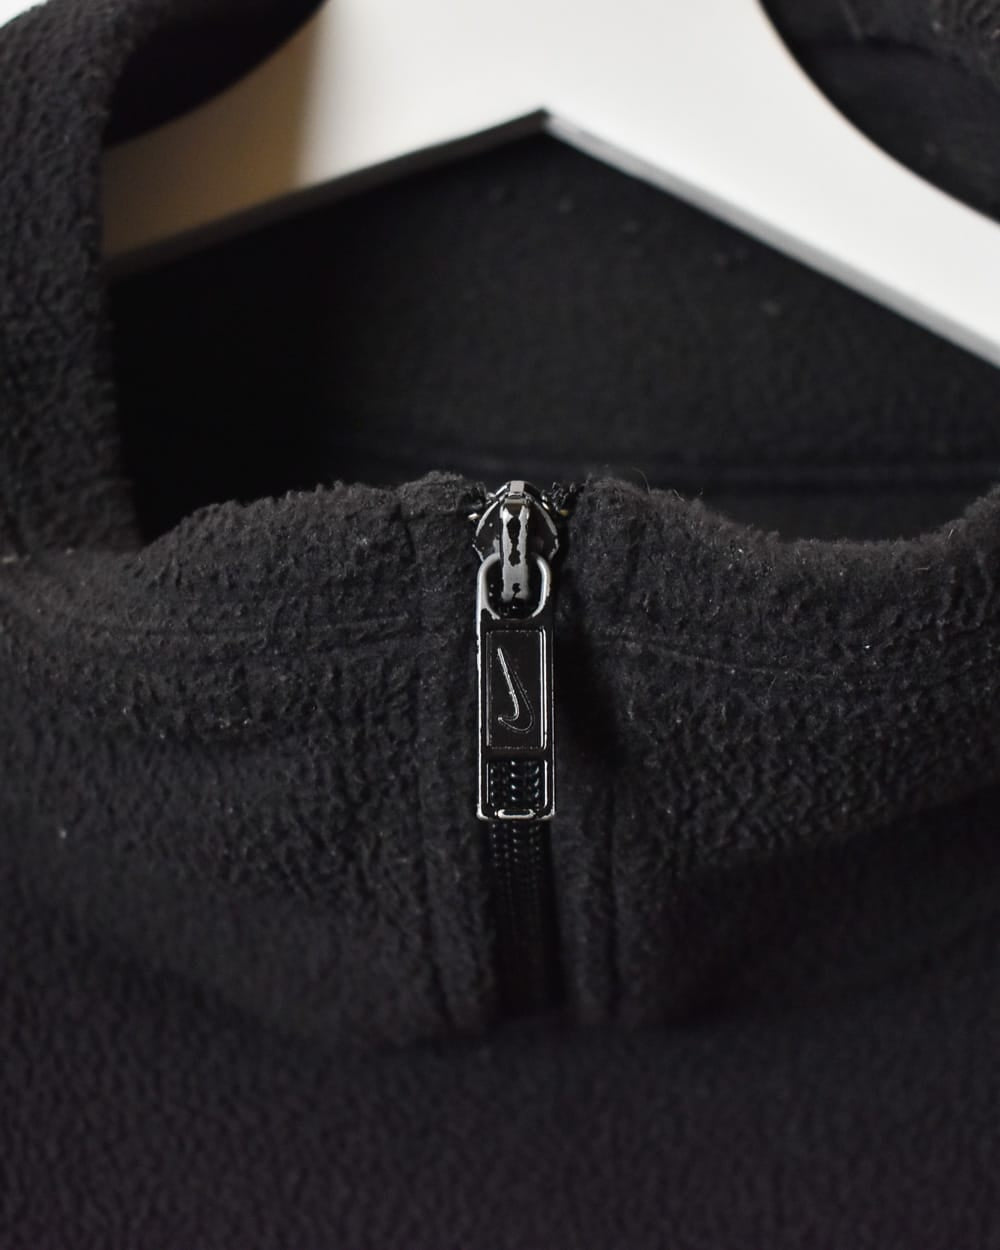 Black Nike 1/4 Zip Fleece - Large